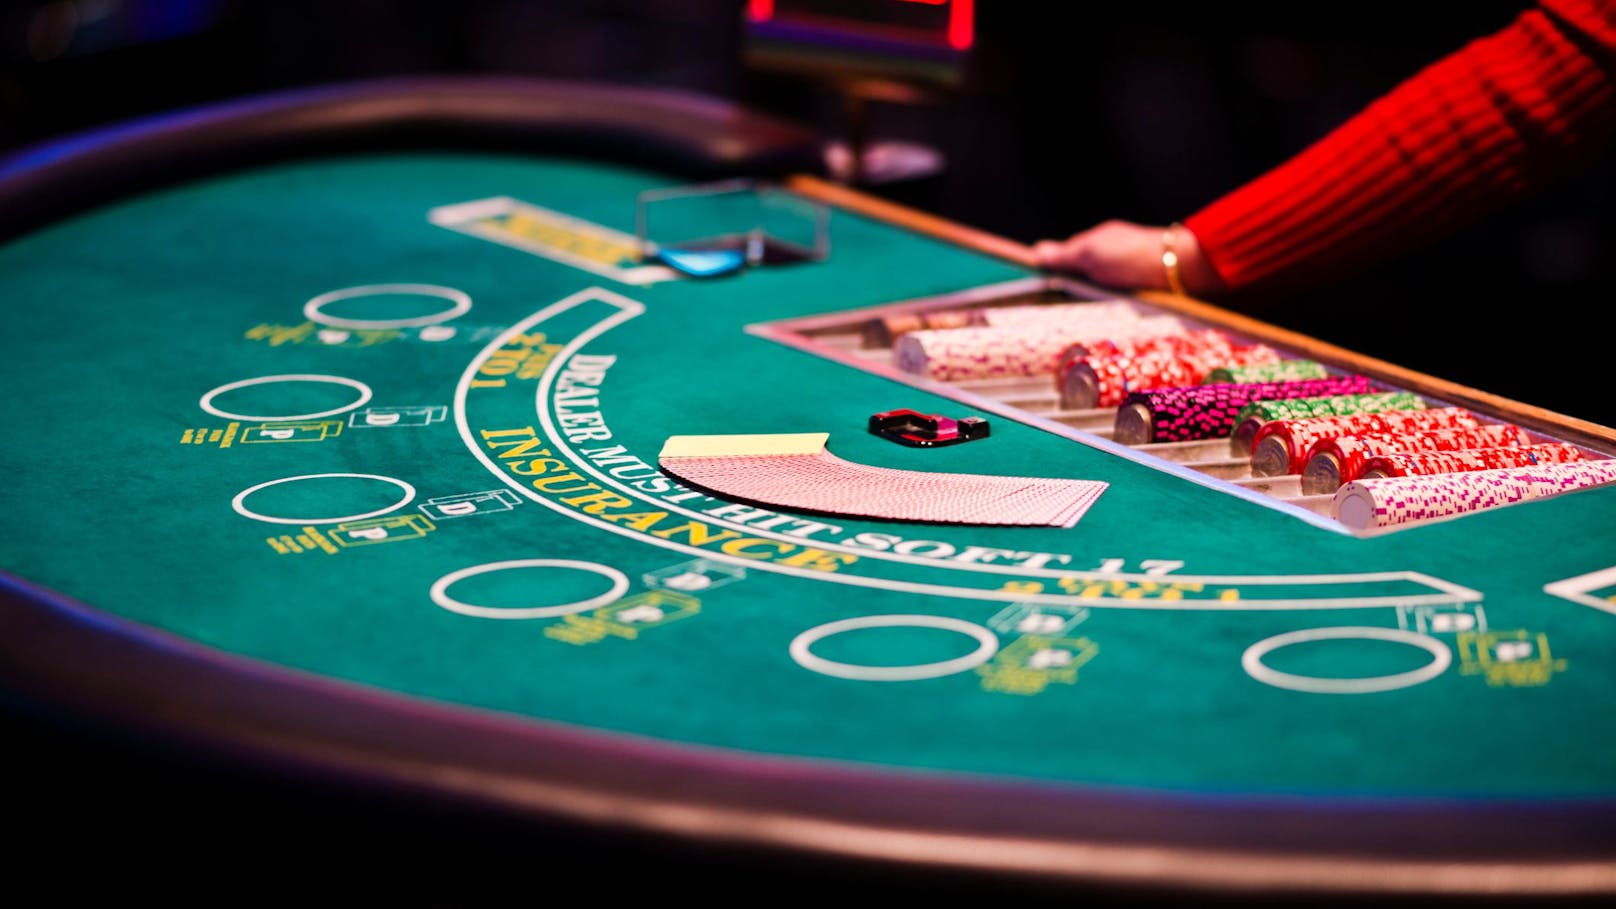 Bande erbeutet mit Trick 136.000 Euro im Casino